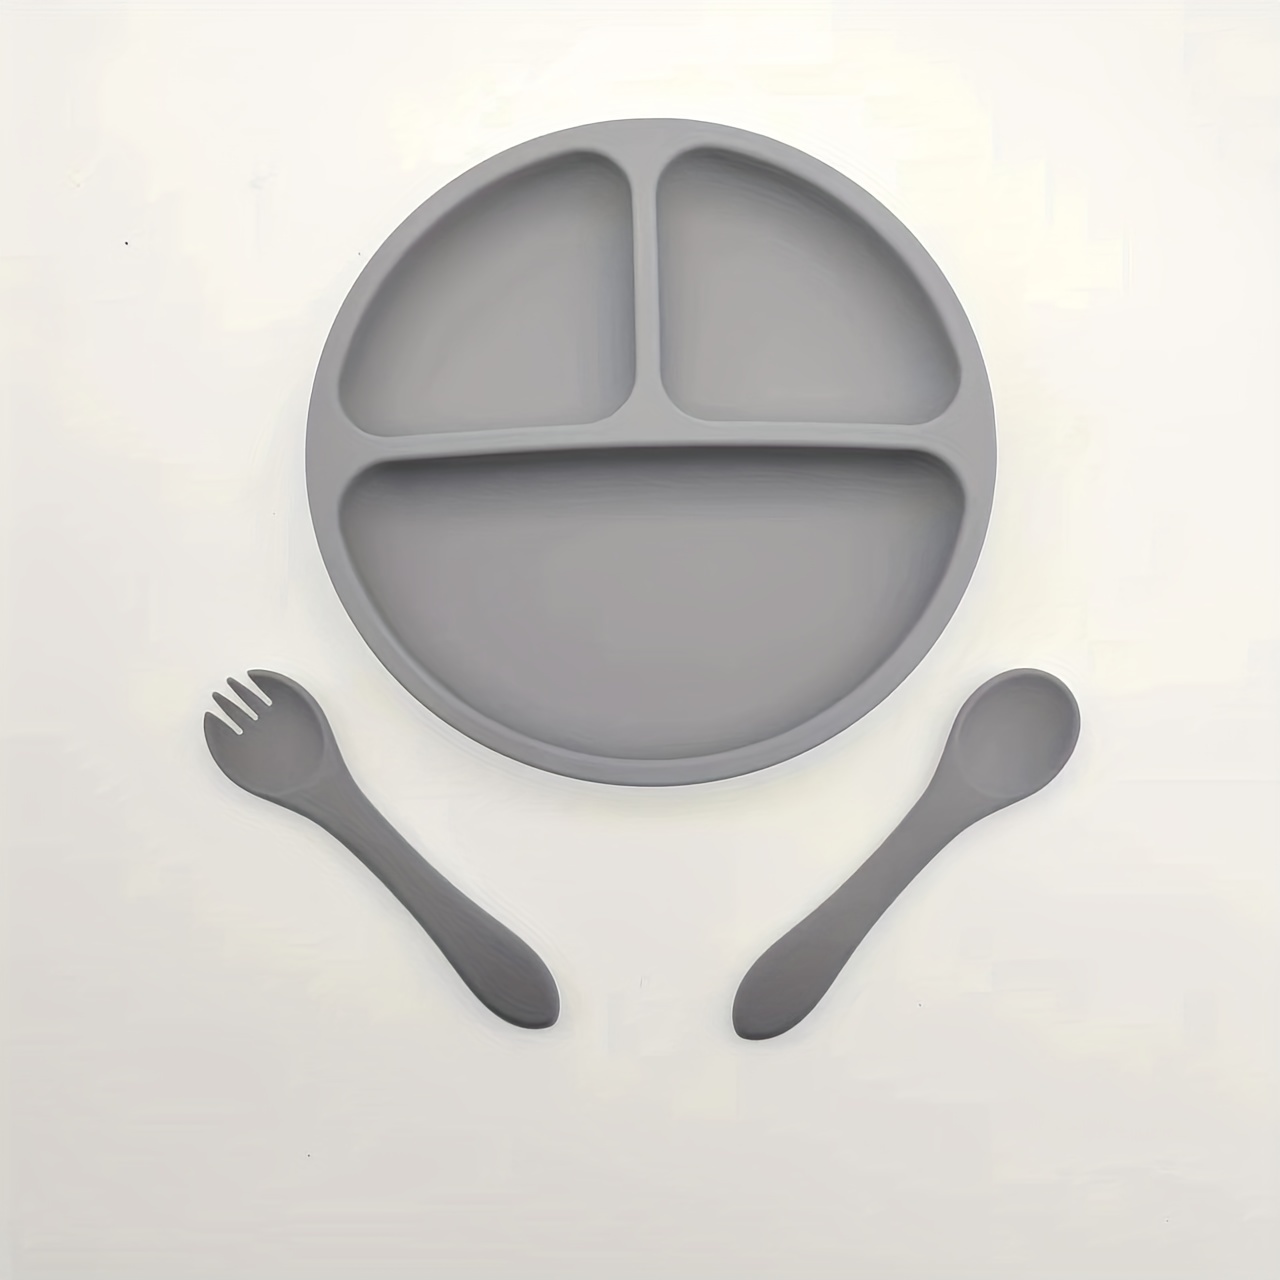 Dishwasher Safe and Other Tableware Symbols